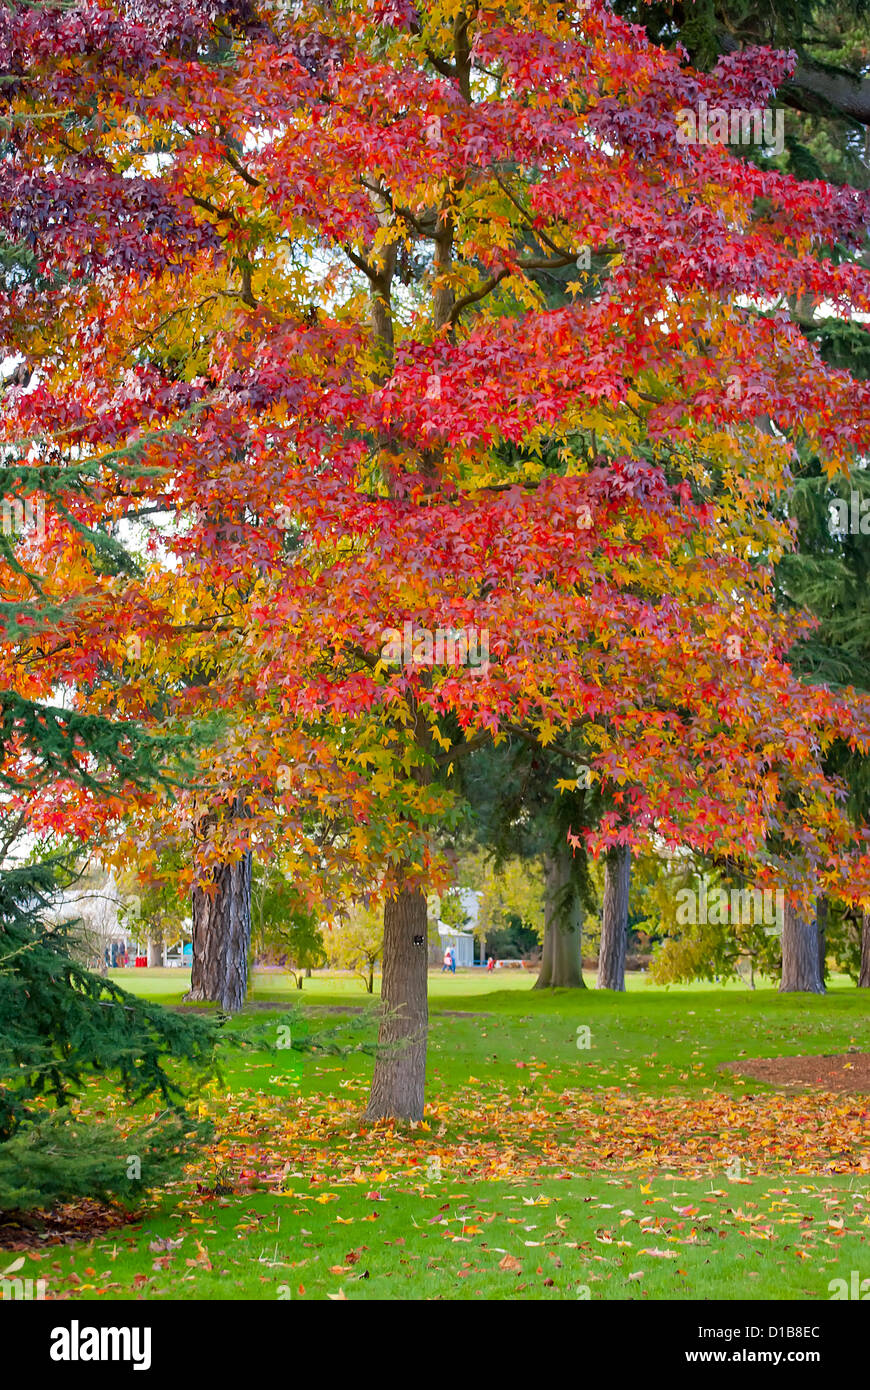 Autumn season at Kew Gardens, London Stock Photo